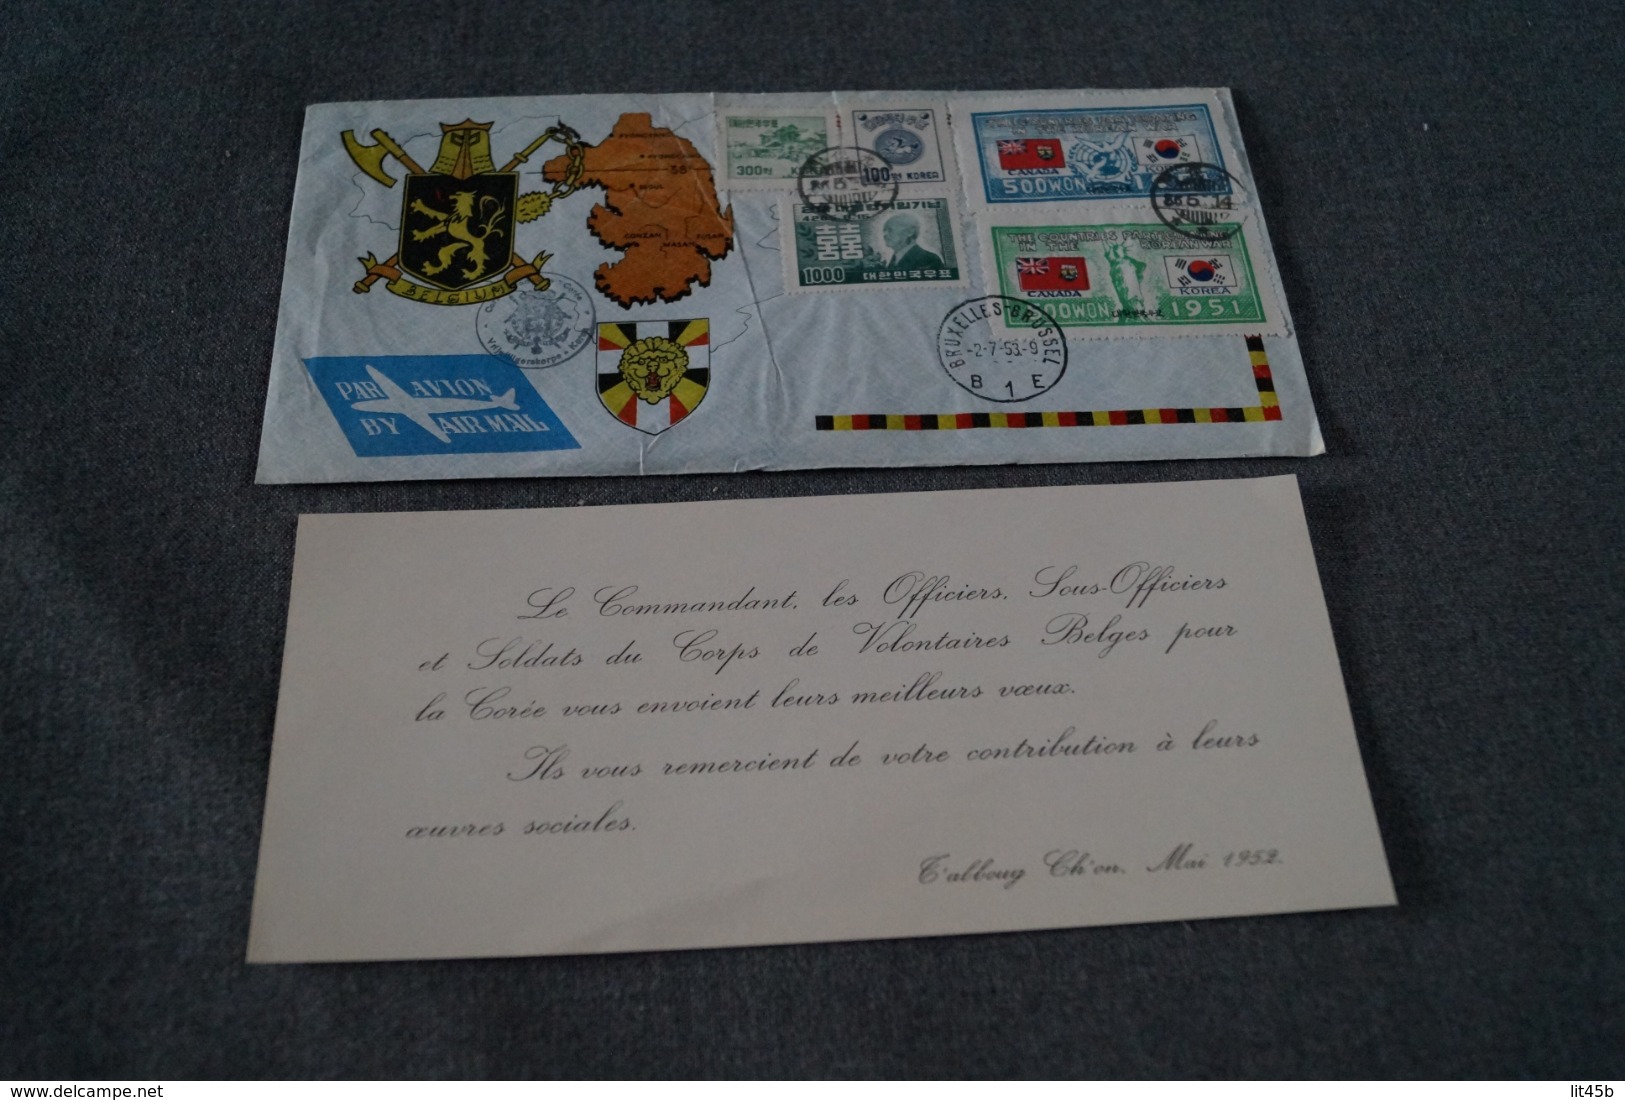 Guerre De Corée,volontaires Belges,envoi En Belgique 1953,superbe Timbres Et Oblitérations,moilitaria - Corée Du Sud